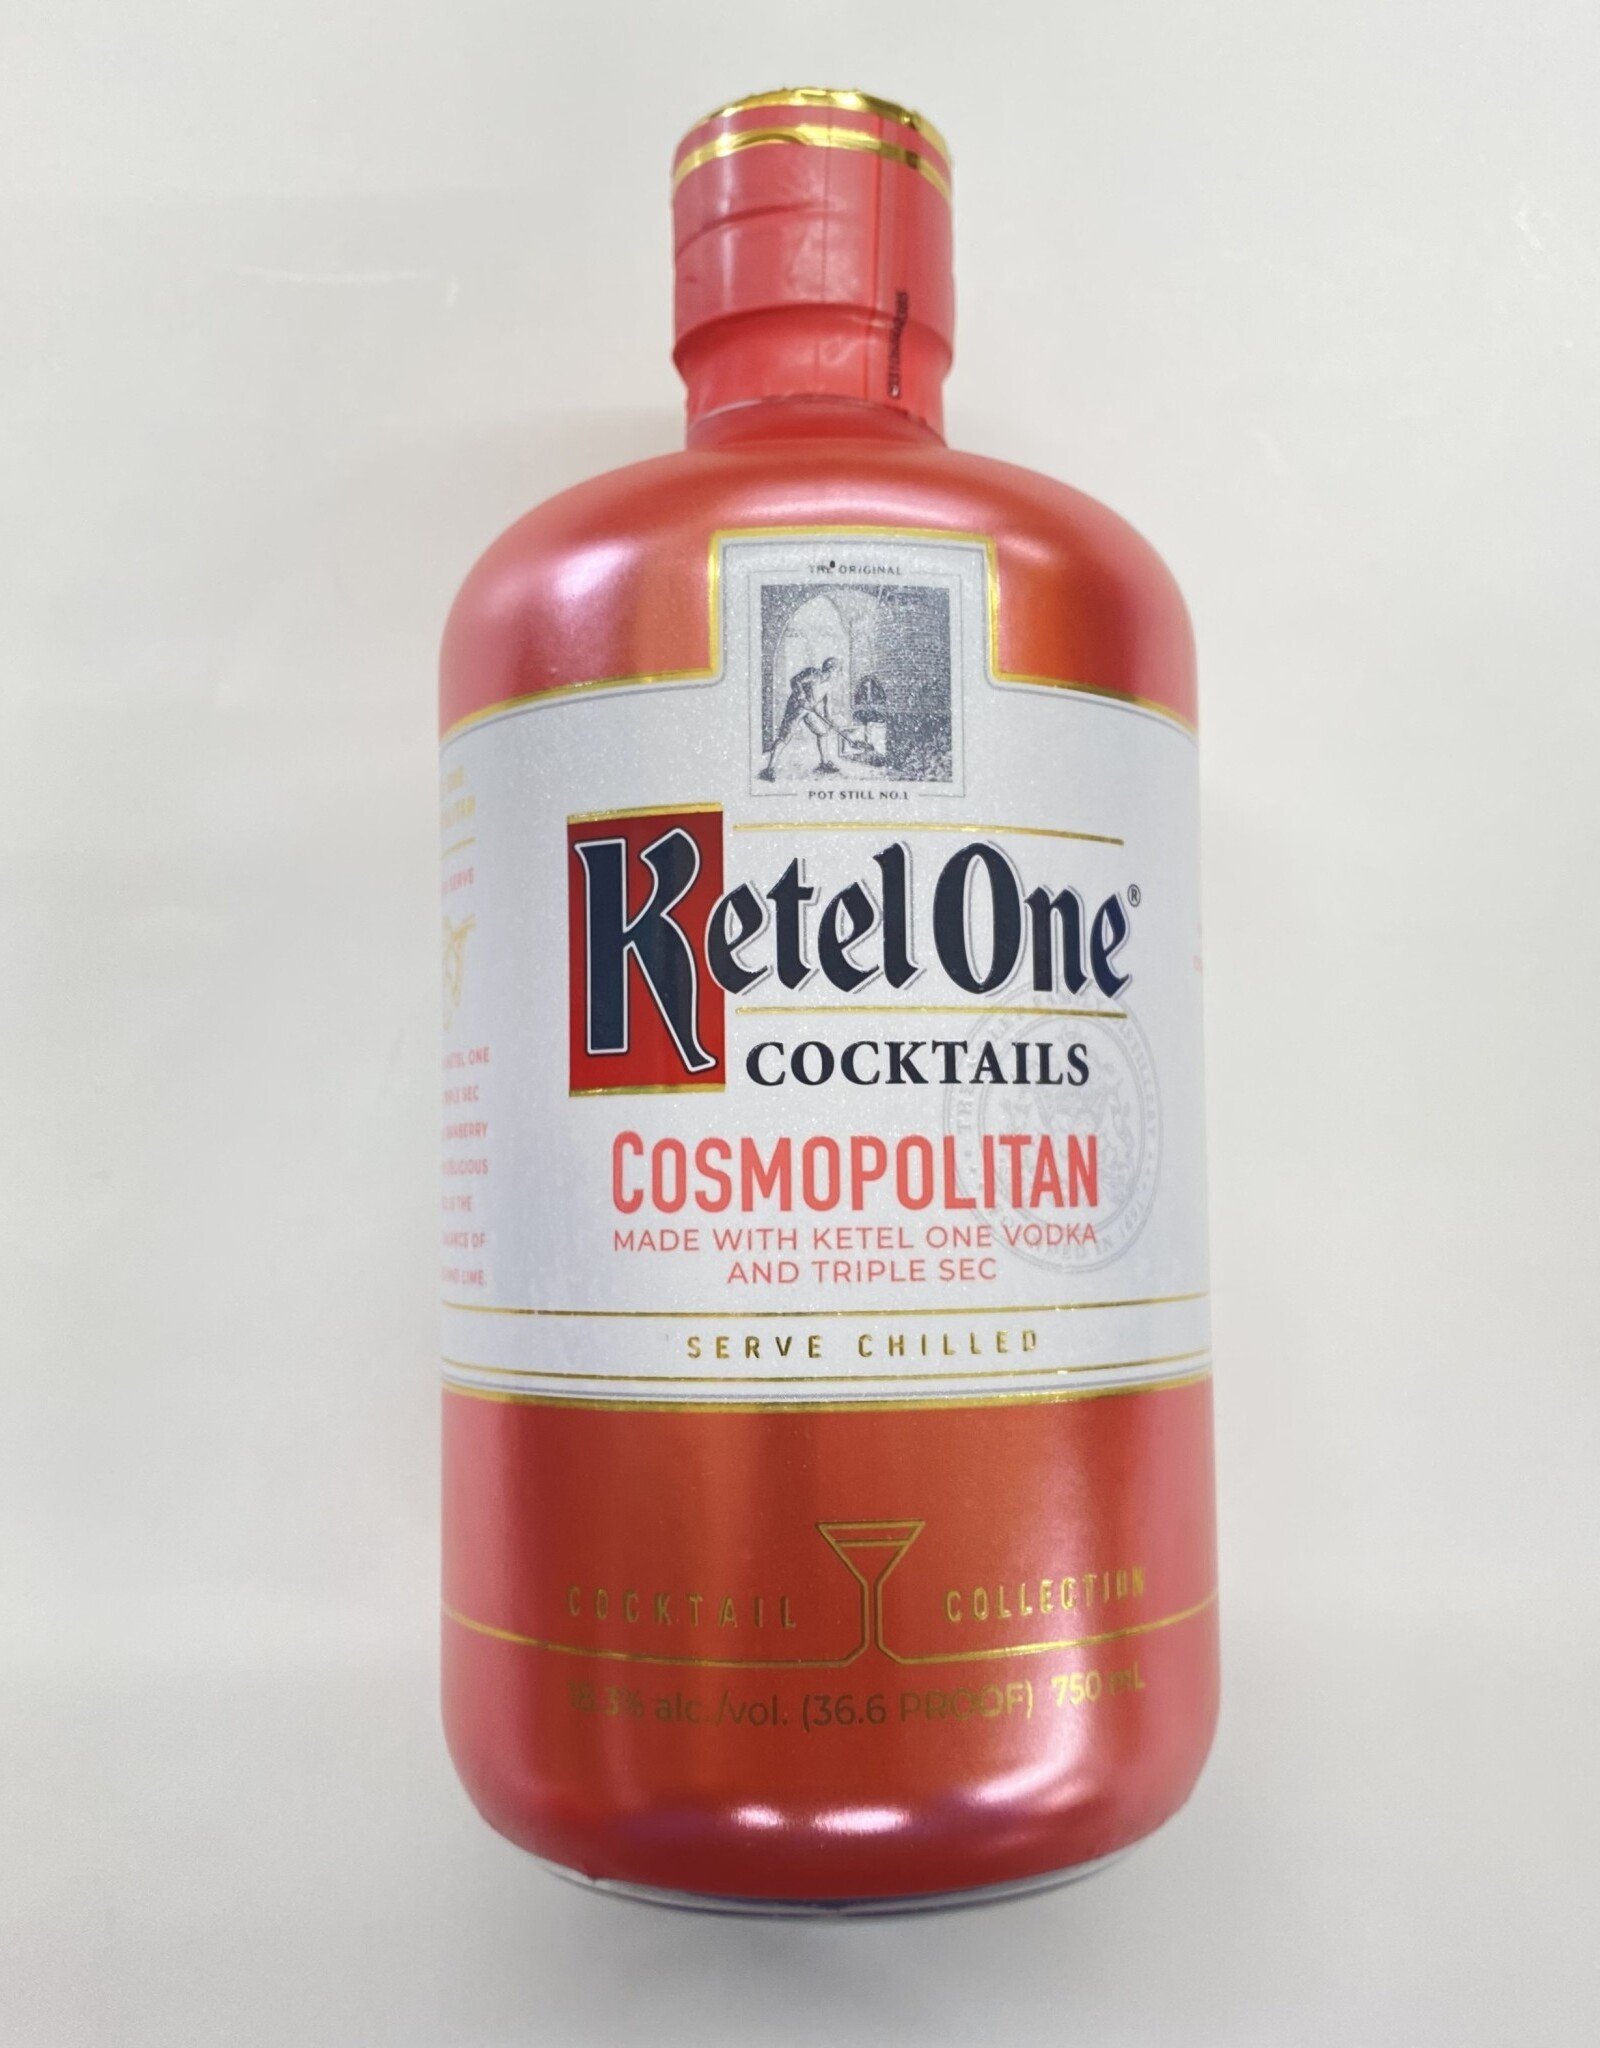 Ketel One Ketel One Cosmopolitan Cocktail